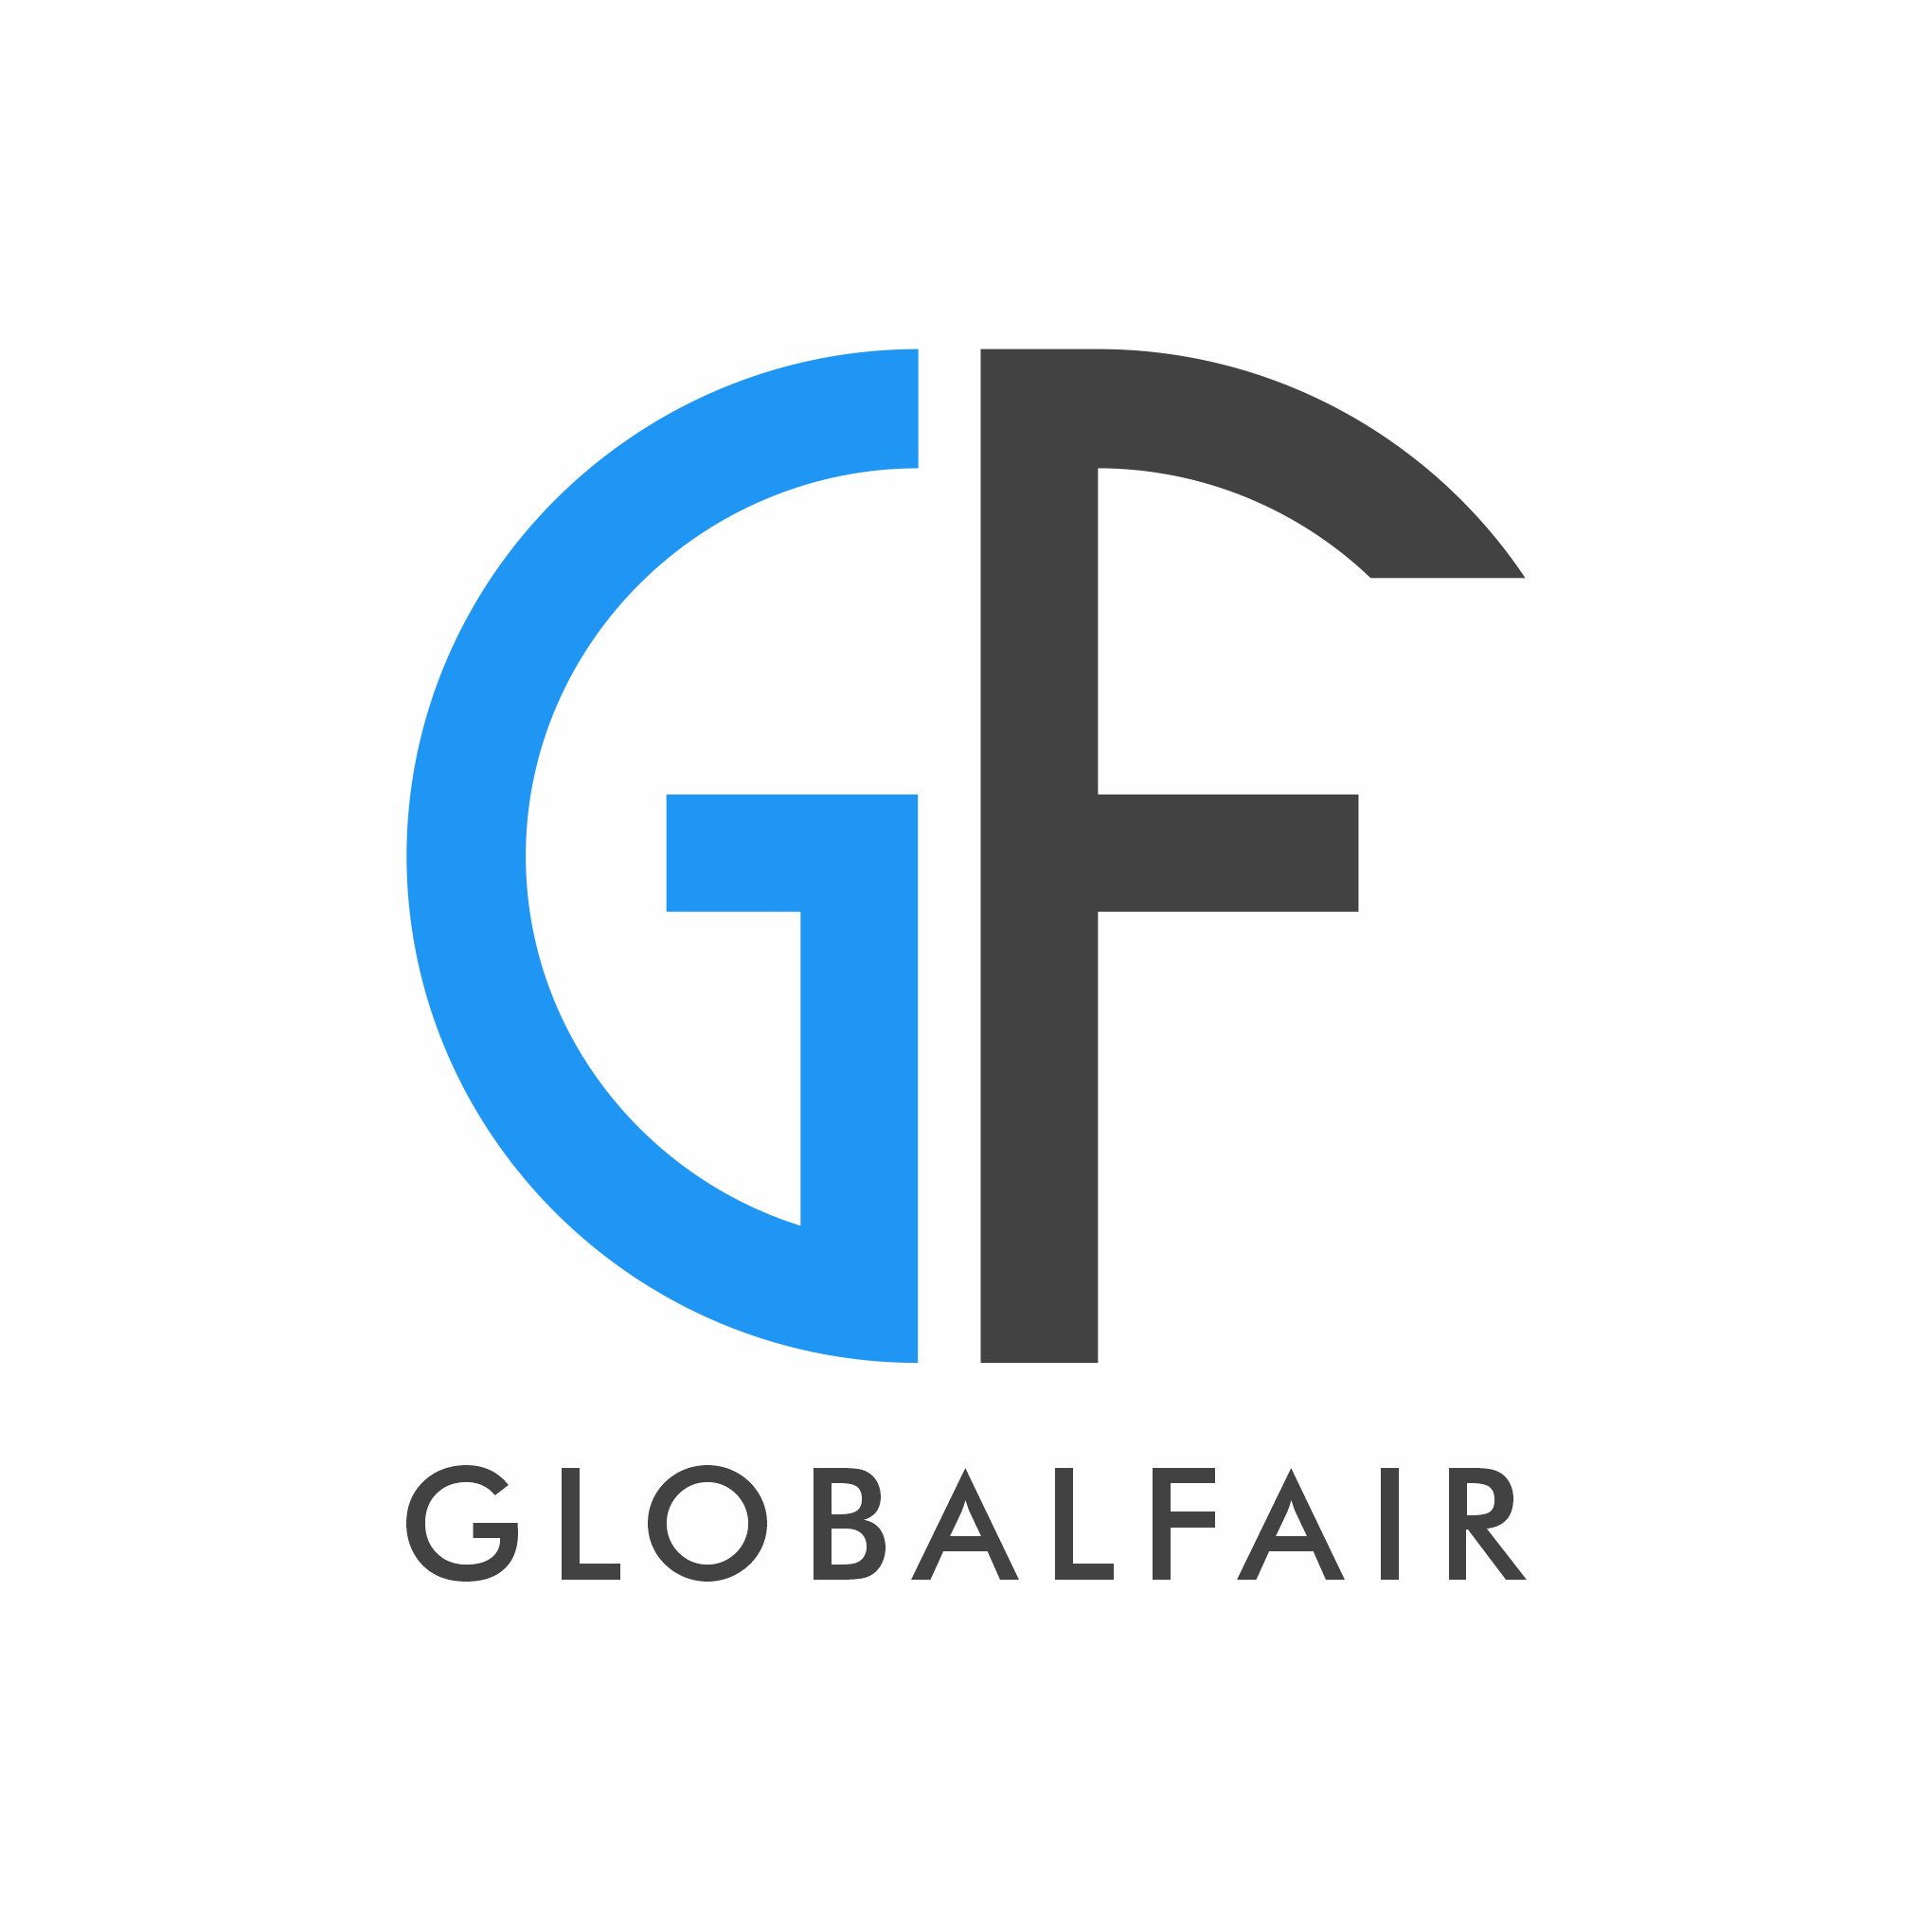 Business logo of GlobalFair Inc